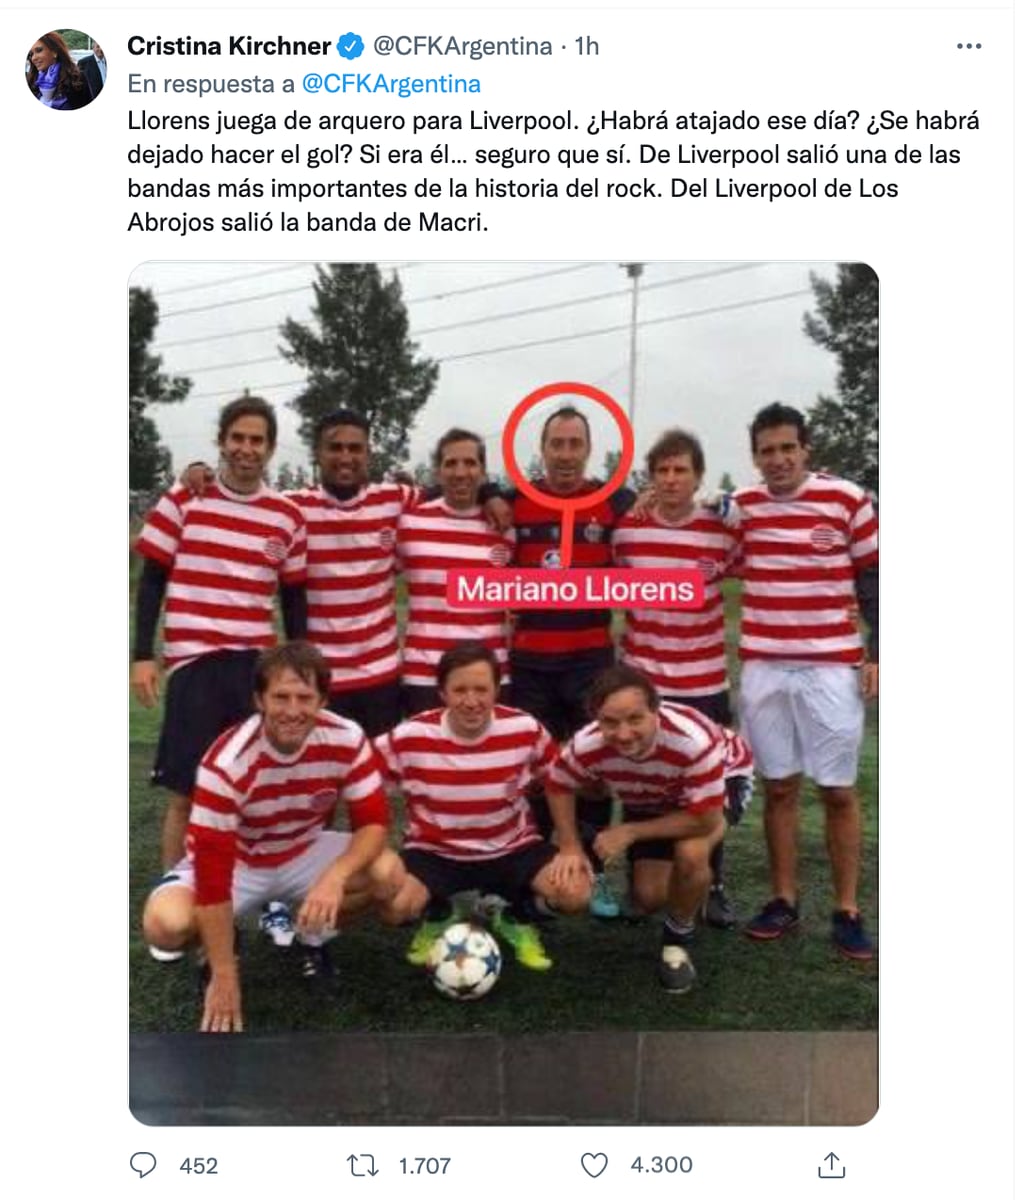 El tuit que señala a Mariano Llorens como integrante del equipo de fútbol.